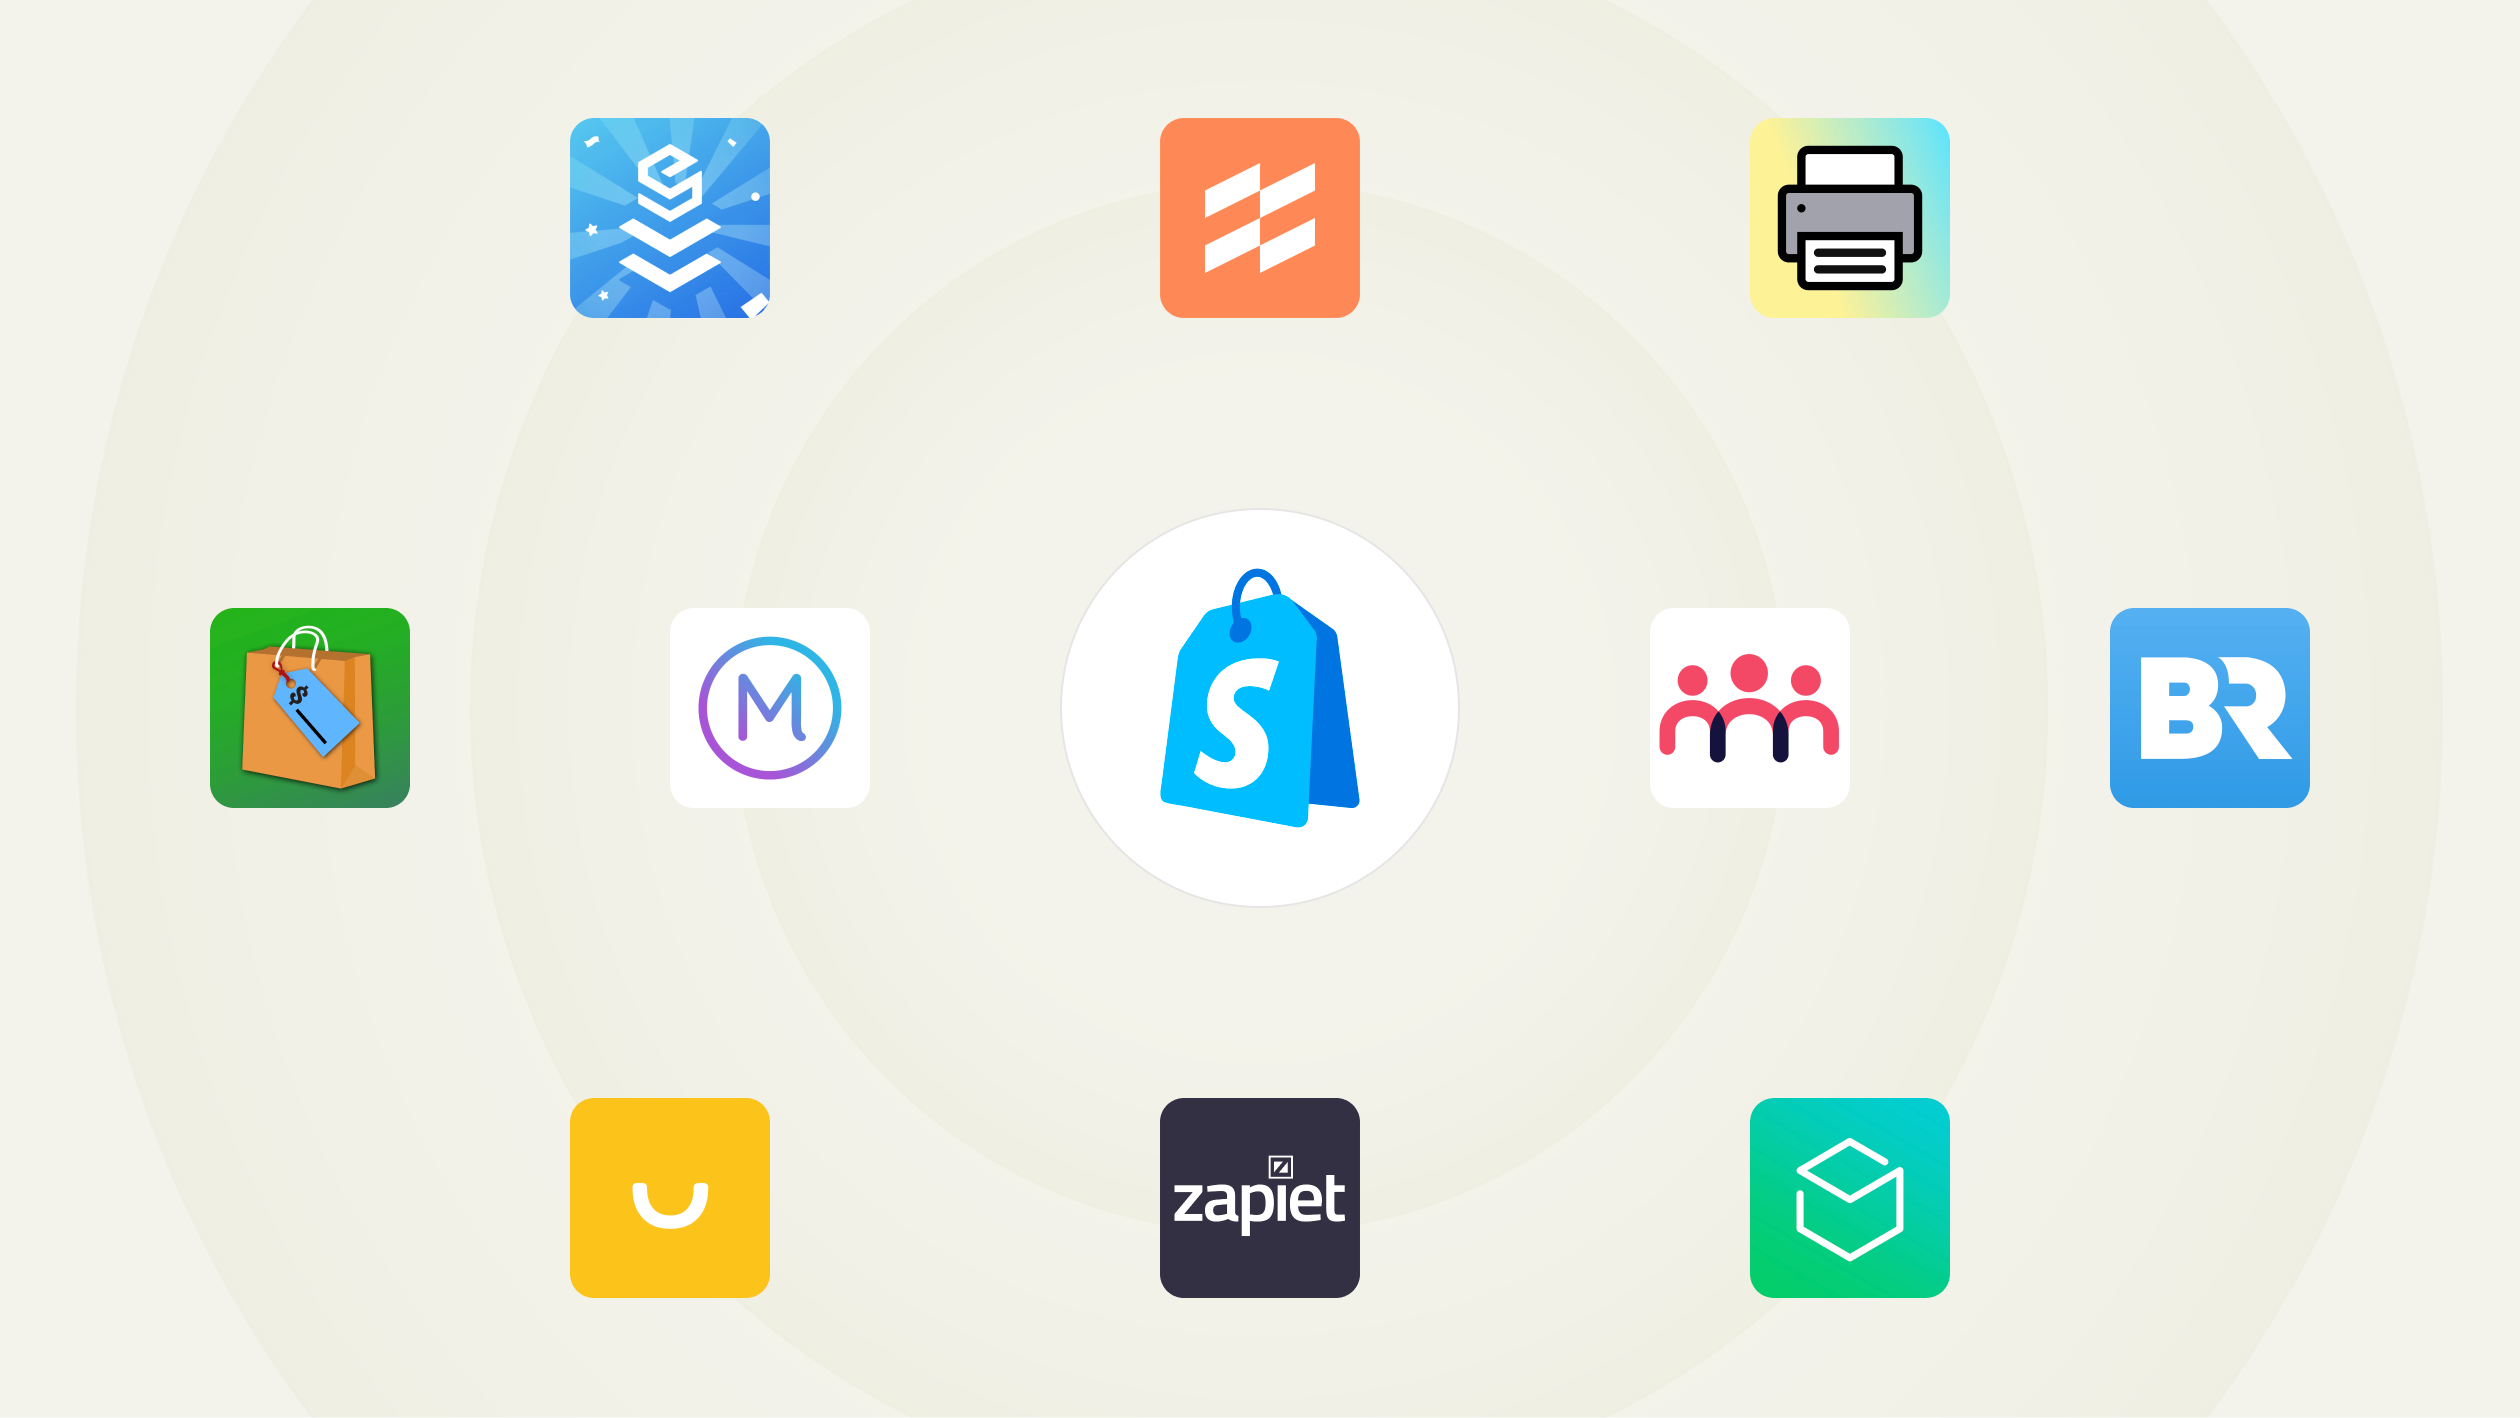 Una colección de íconos de aplicaciones. En la parte central aparece el logo de Shopify POS; alrededor del logo aparecen íconos de aplicaciones populares, como EasyTeam, Filljoy, Zapiet, Optizio, Stocky, Order Printer, Smile, Better Reports, Marsello y Endear.